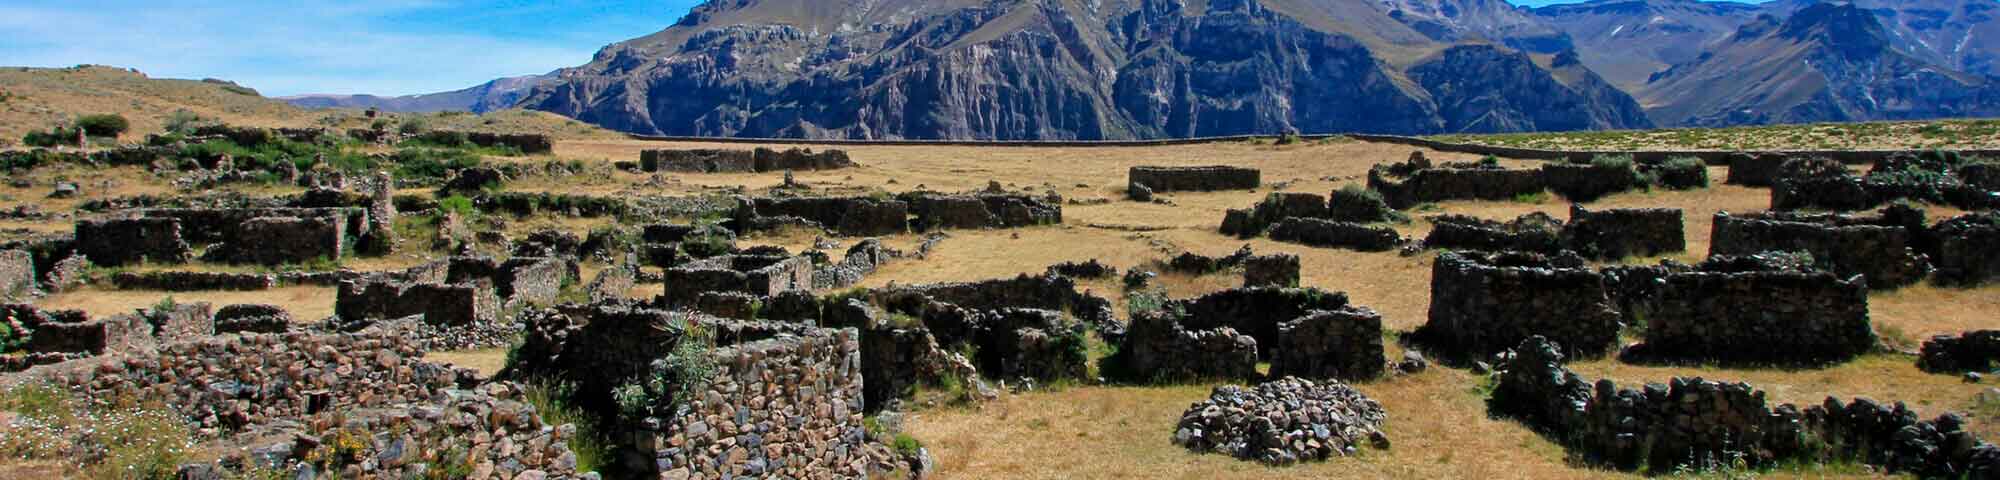 Ruinas de Maukallacta (Puyca)